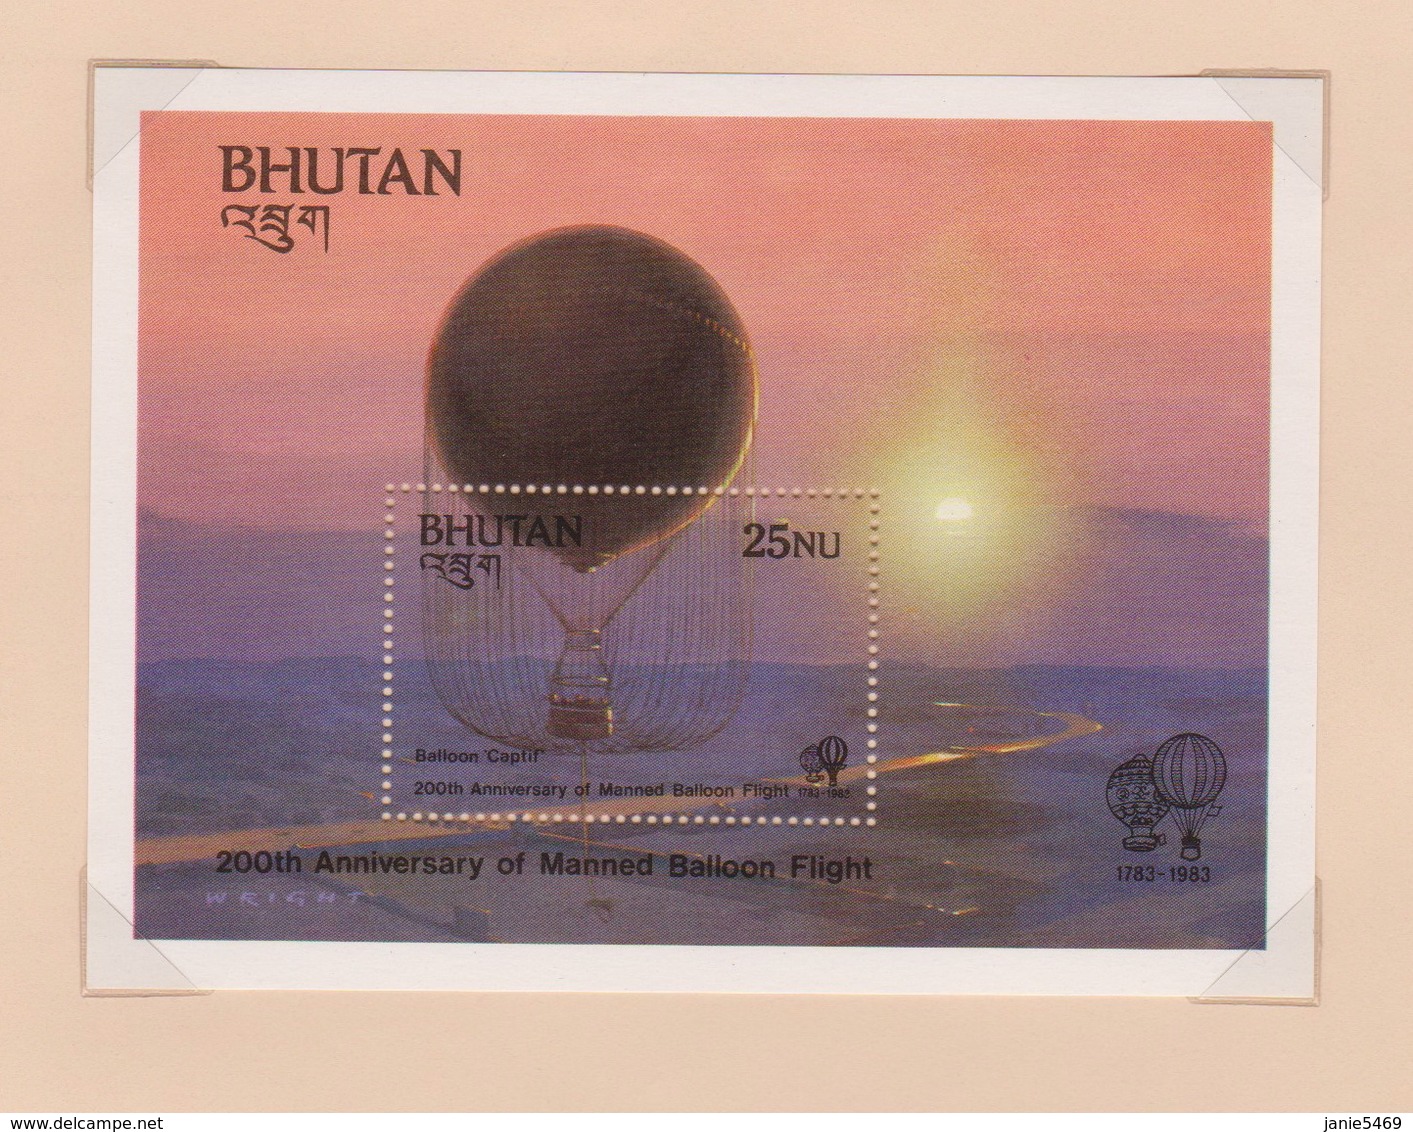 Bhutan SG 510 MS 1983 Bicentenary Manned Flight, Miniature Sheet, Mint Never Hinged - Bhutan